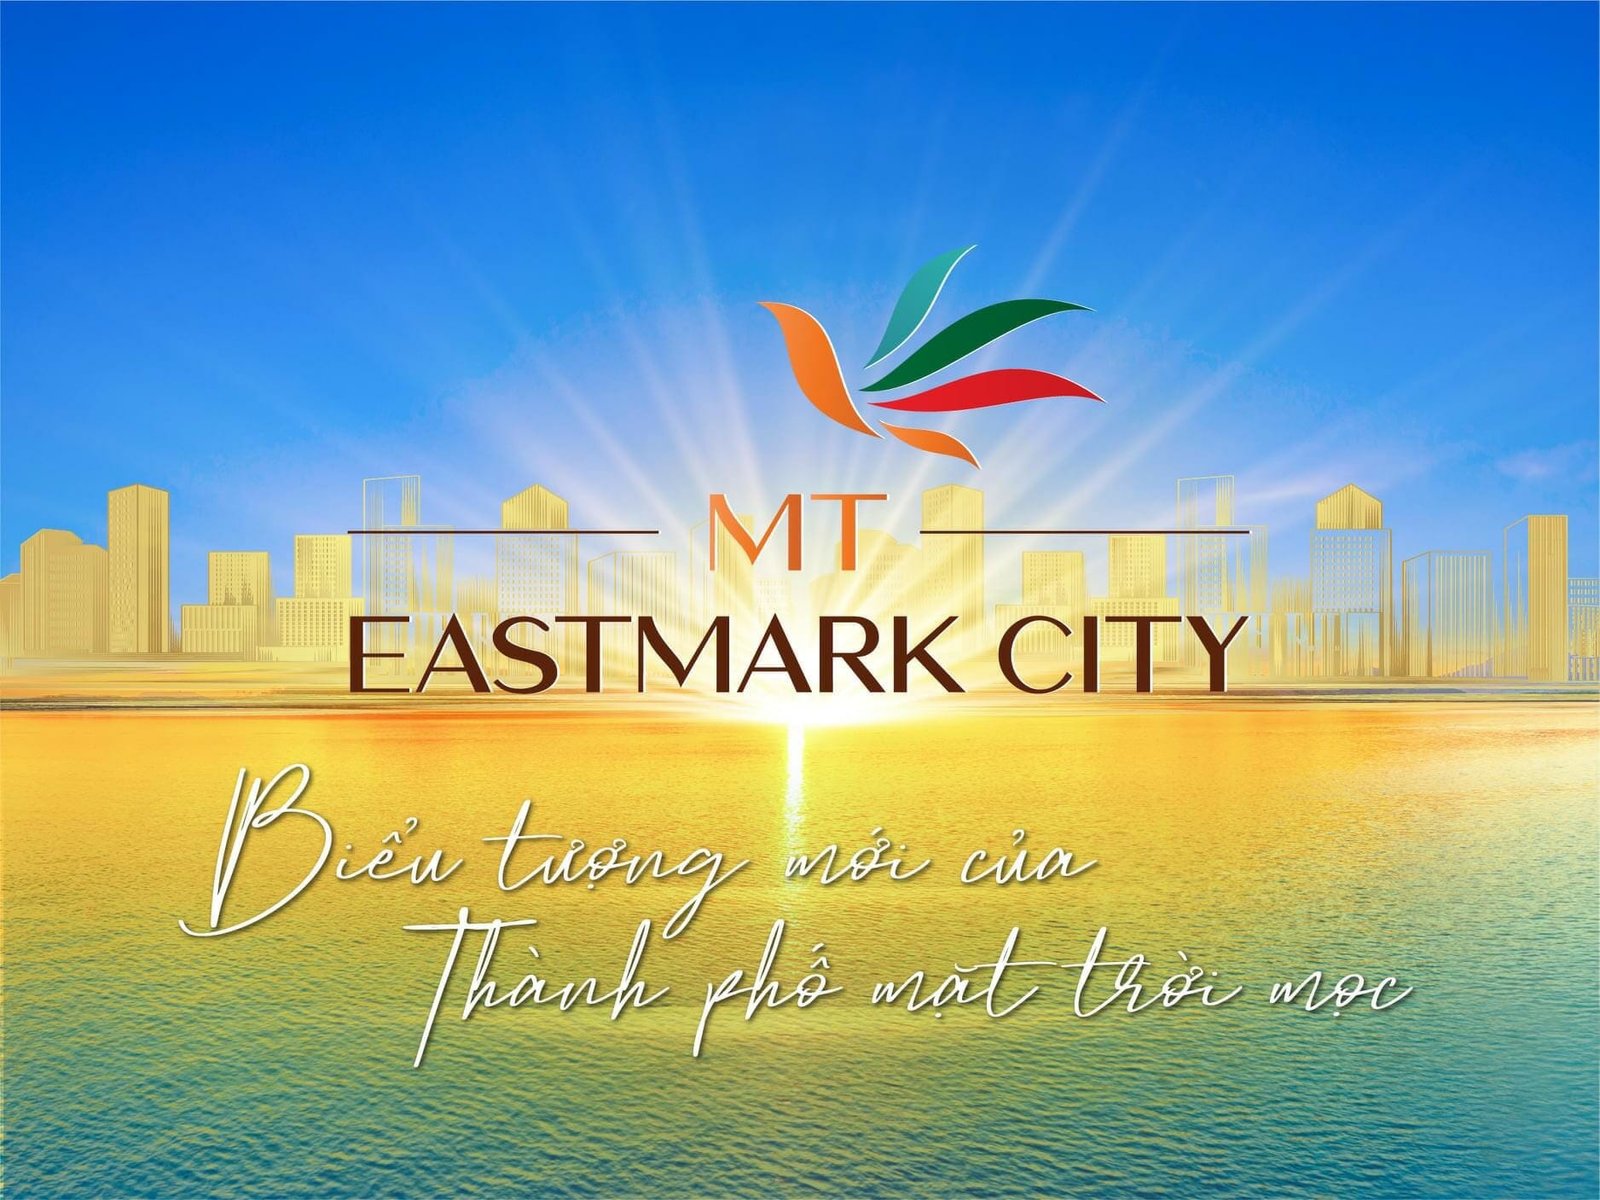 Căn hộ Tp Thủ Đức - MT EASTMARK CITY sắp ra mắt thị trường